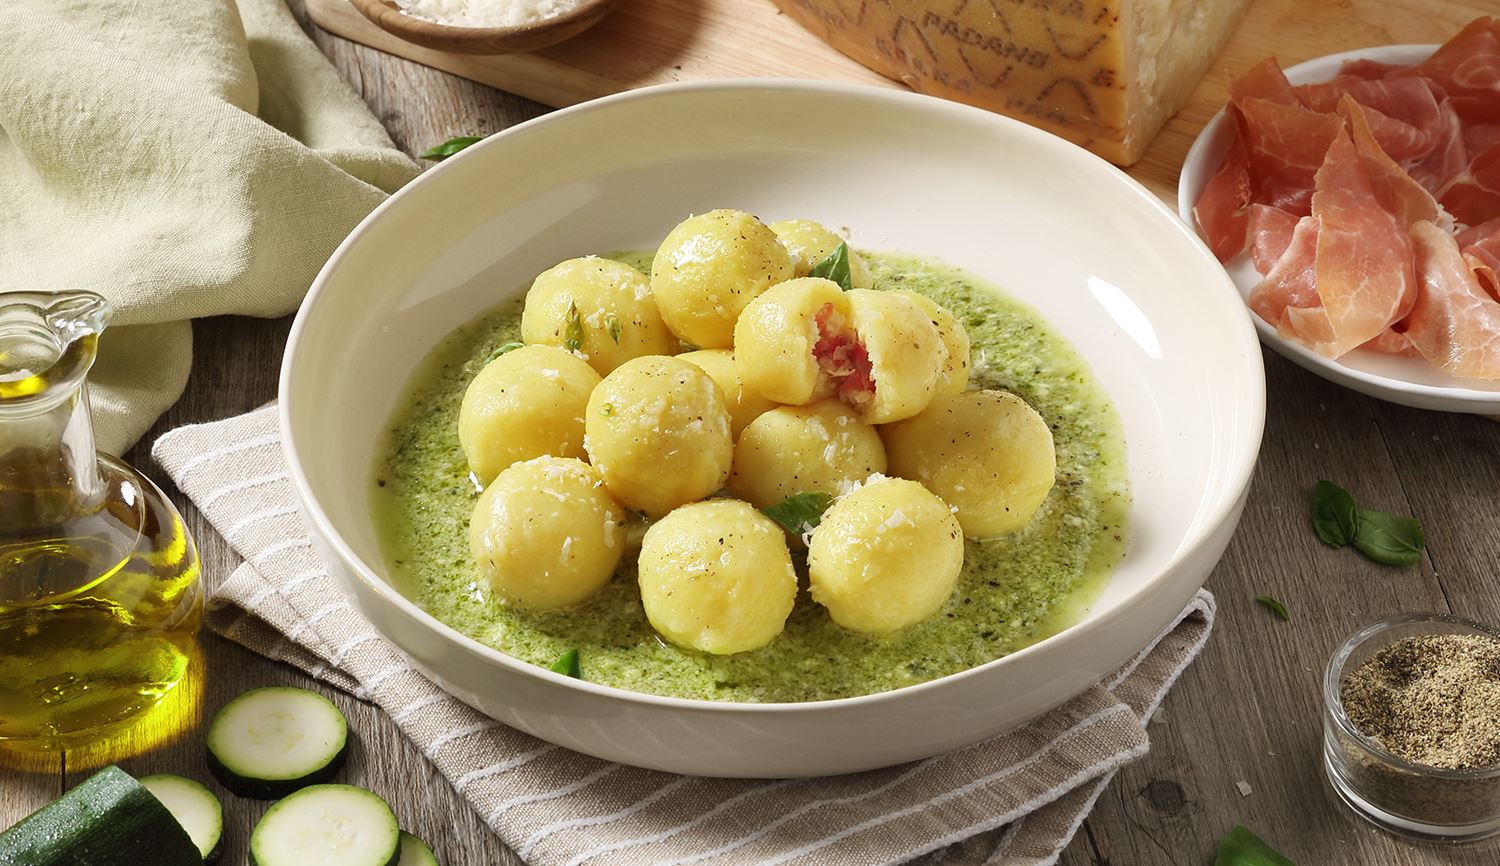 Gnocchi de patatas relleno de Grana Padano Riserva y prosciutto, adornado con courgette y pesto de albahaca